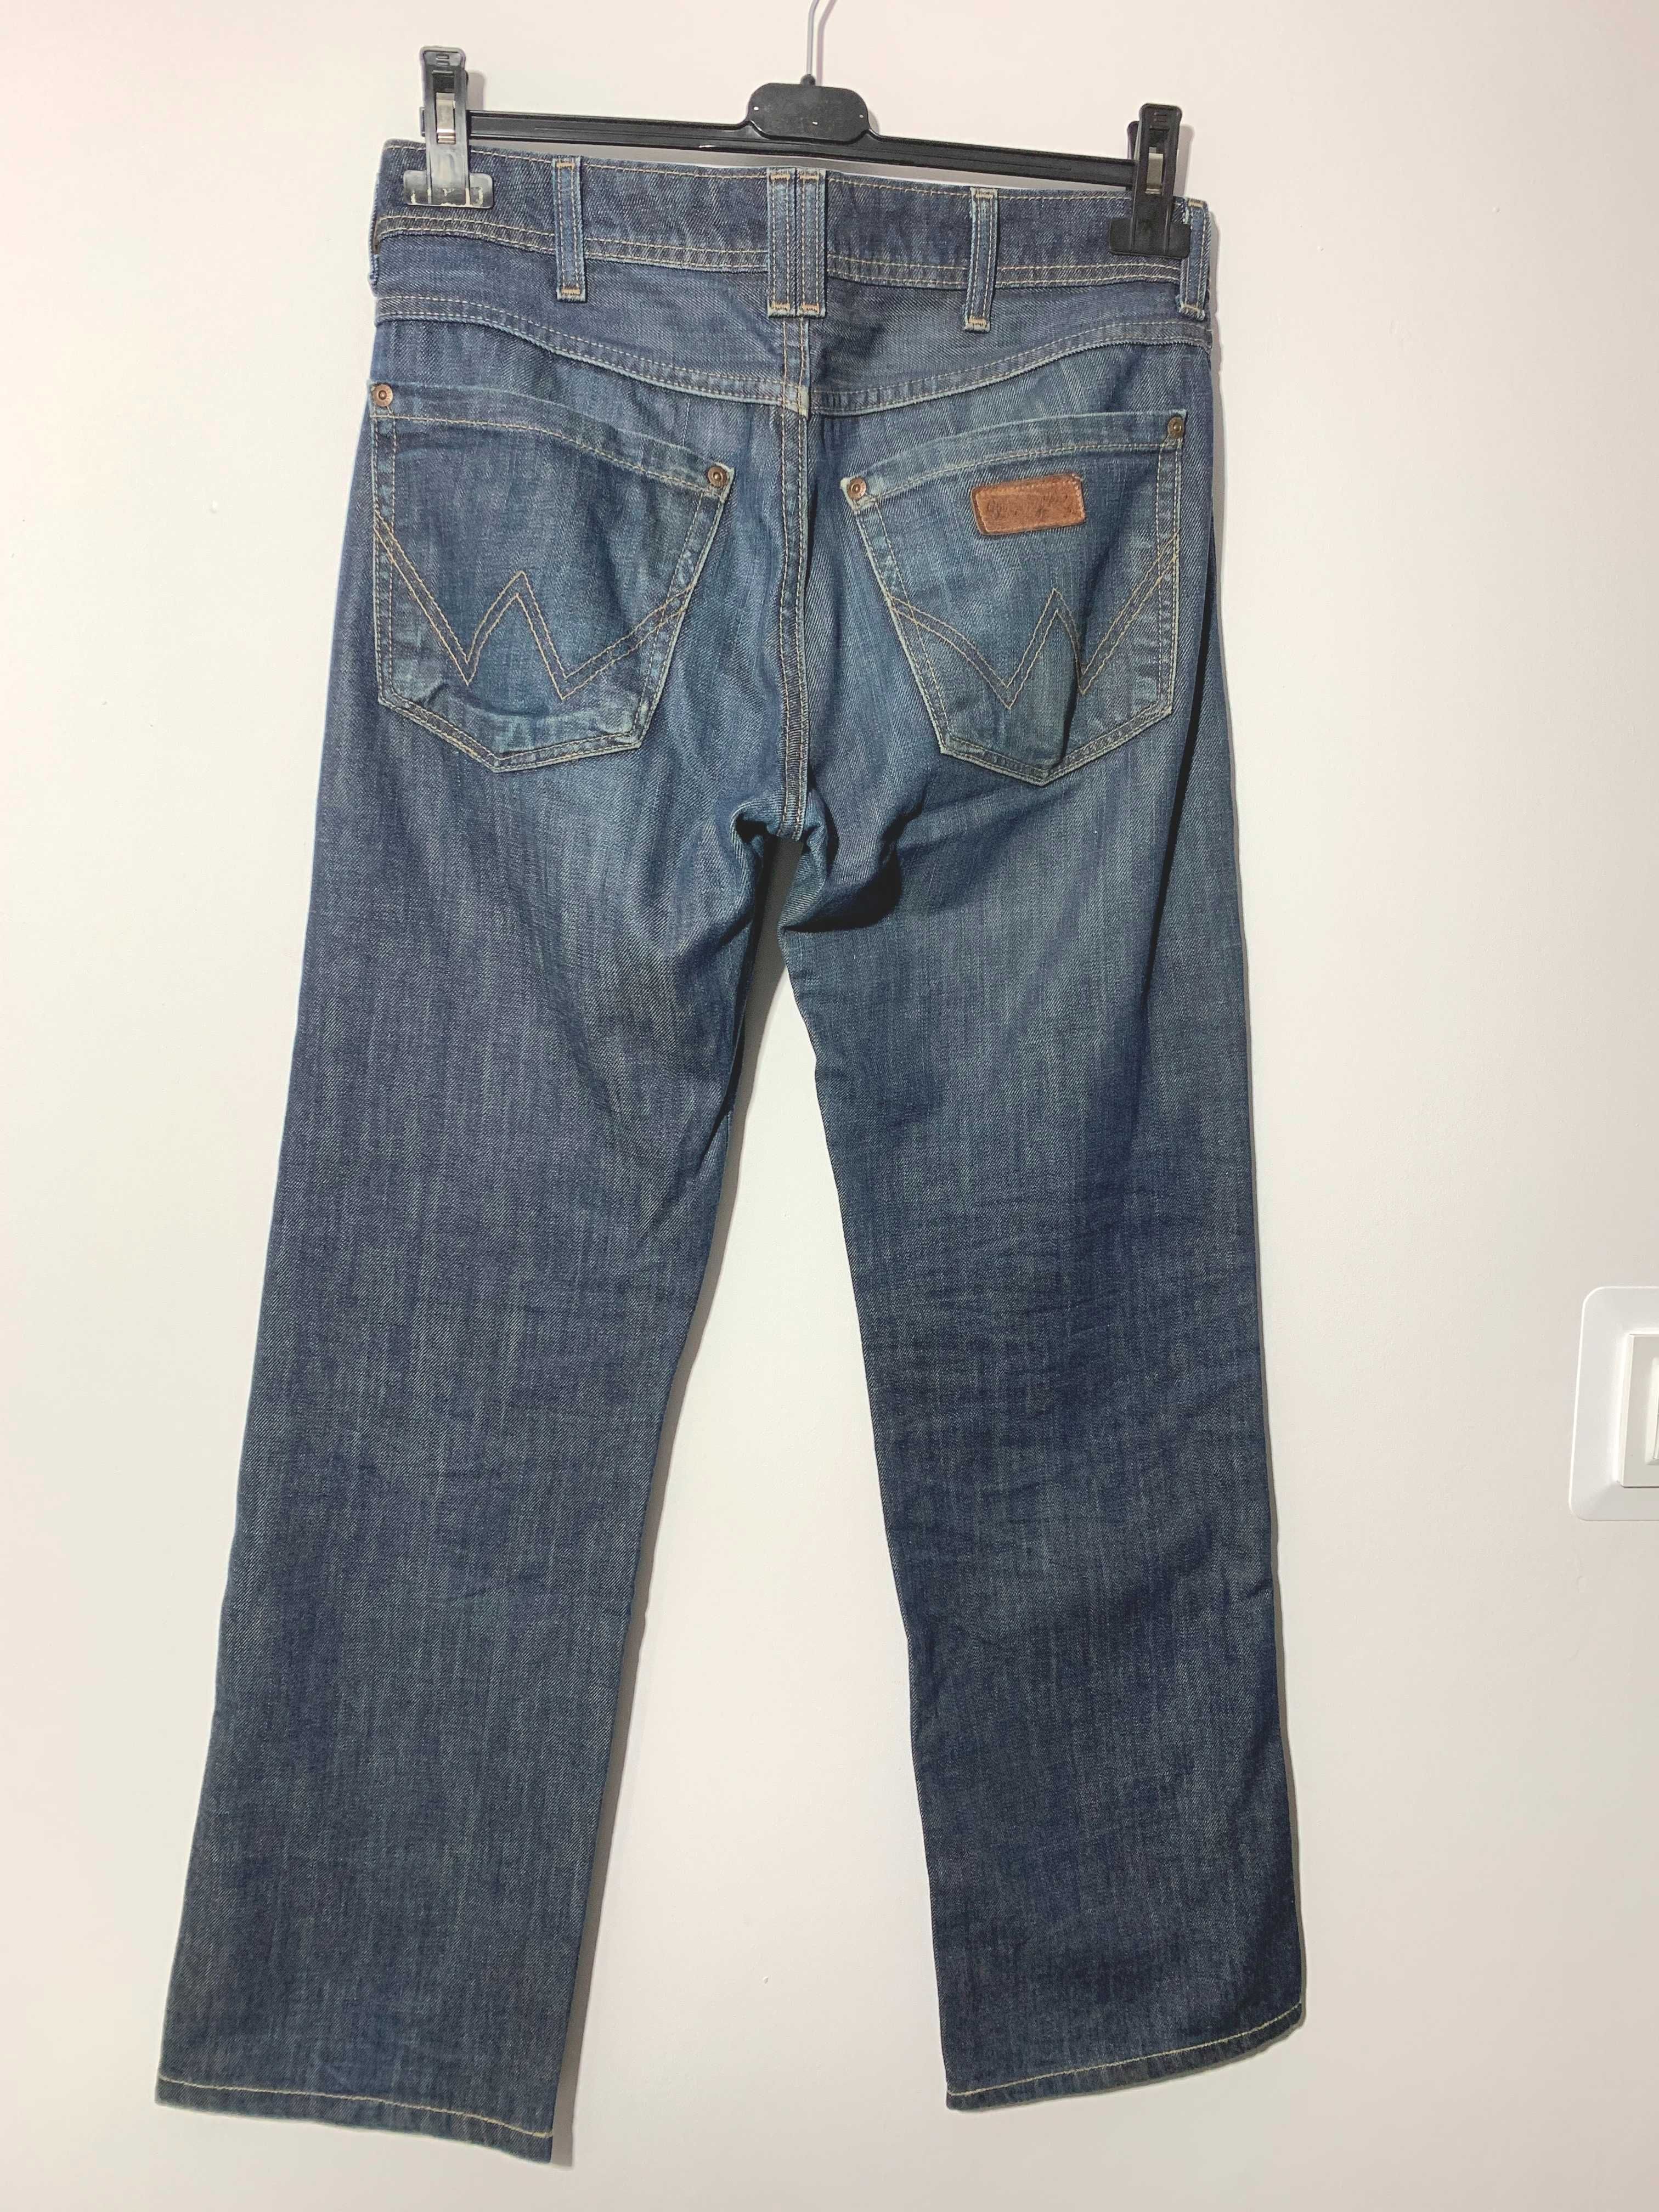 spodnie męskie Wrangler Clyde W29 L32 jeans dżins denim proste S M